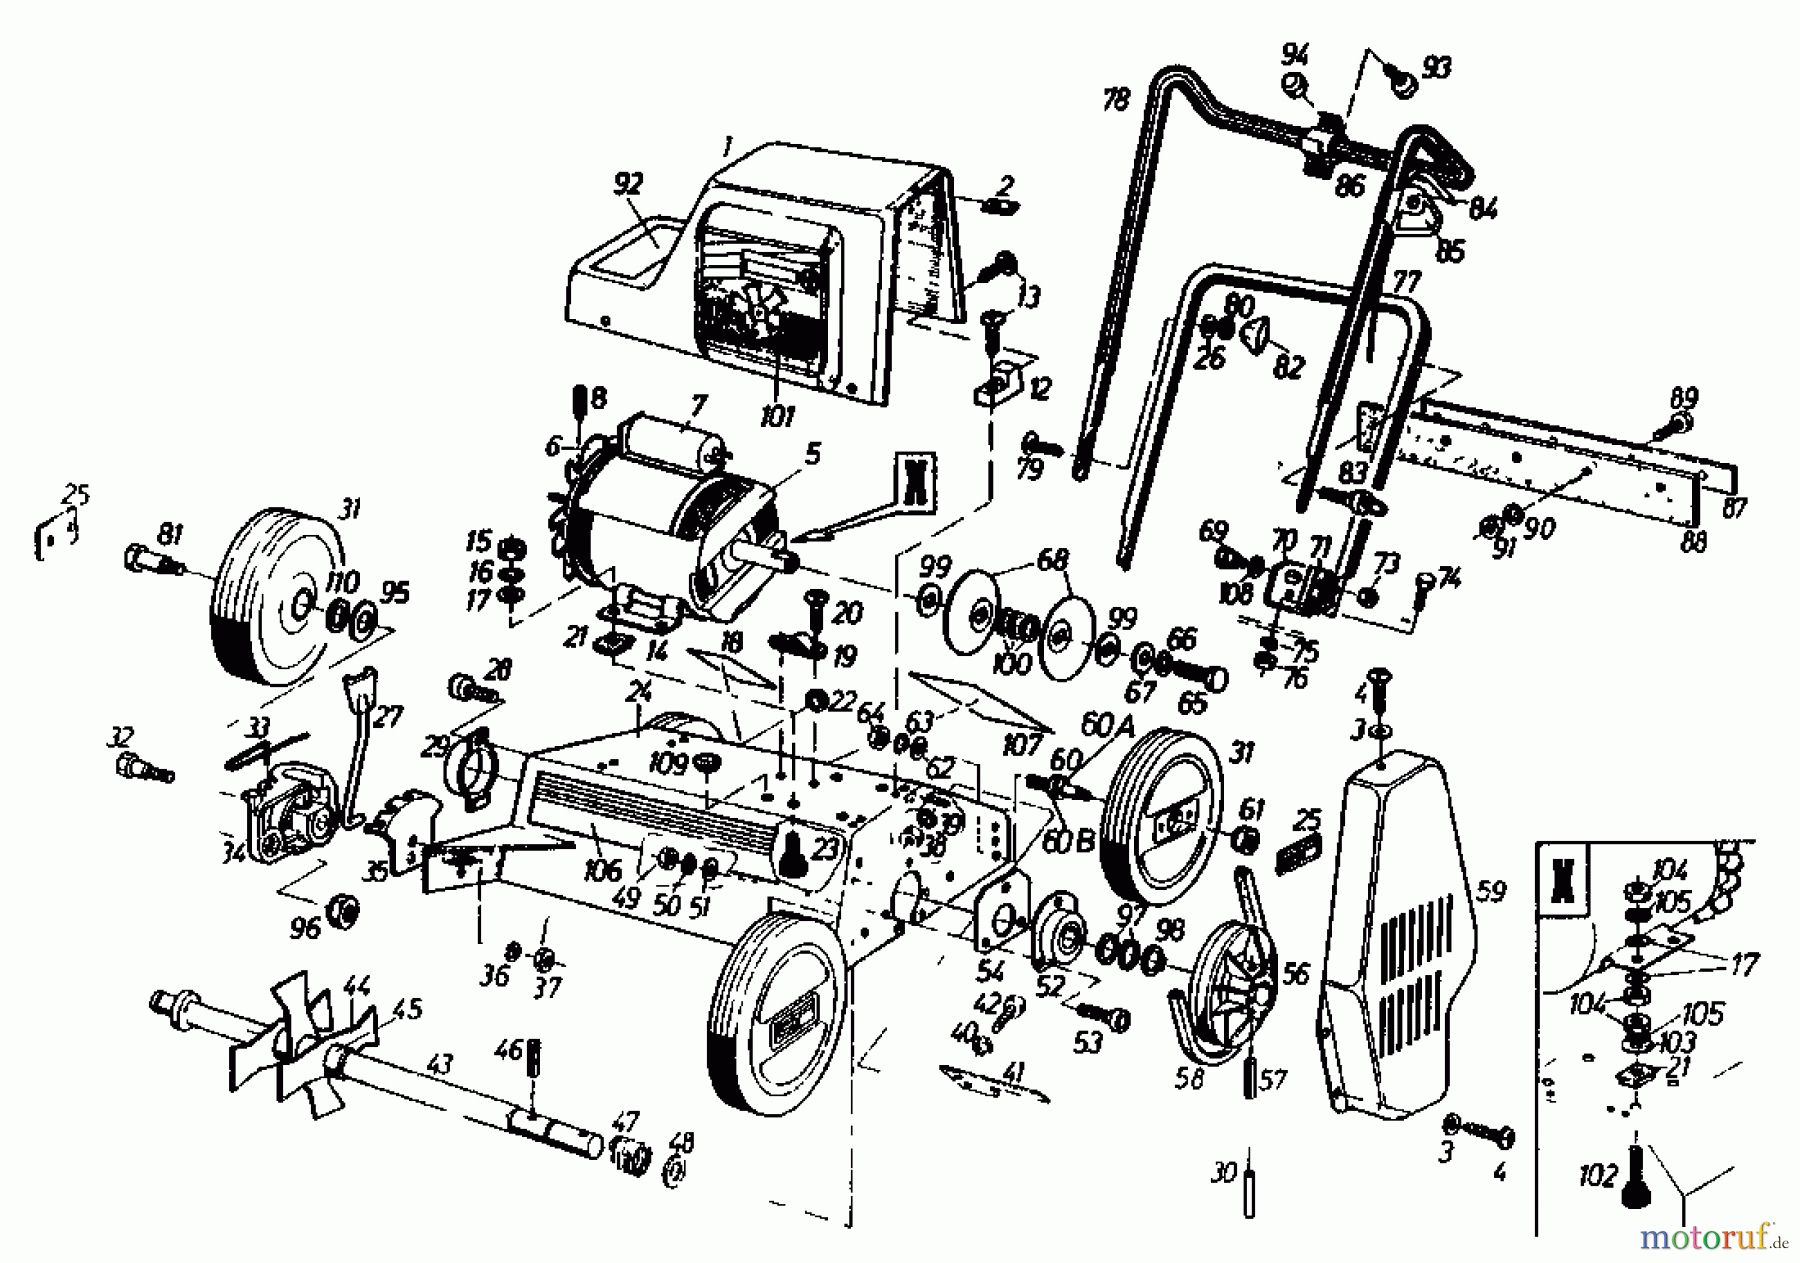  Gutbrod Electric verticutter VS 40 E 02699.06  (1987) Basic machine